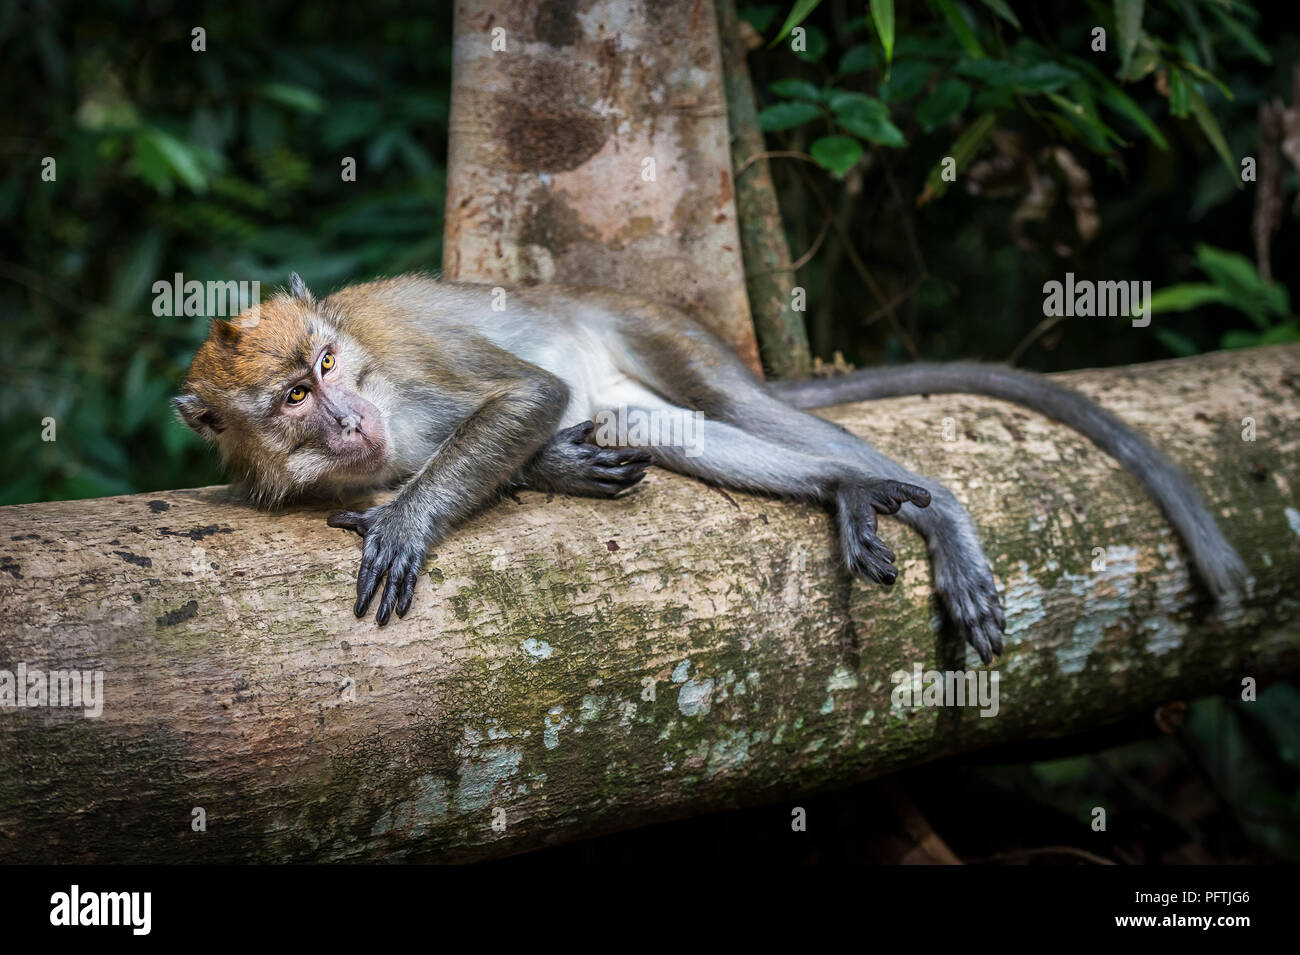 Singe Macaque de Sumatra dans la région de parc national de Gunung Leuser, Sumatra, Indonésie Banque D'Images